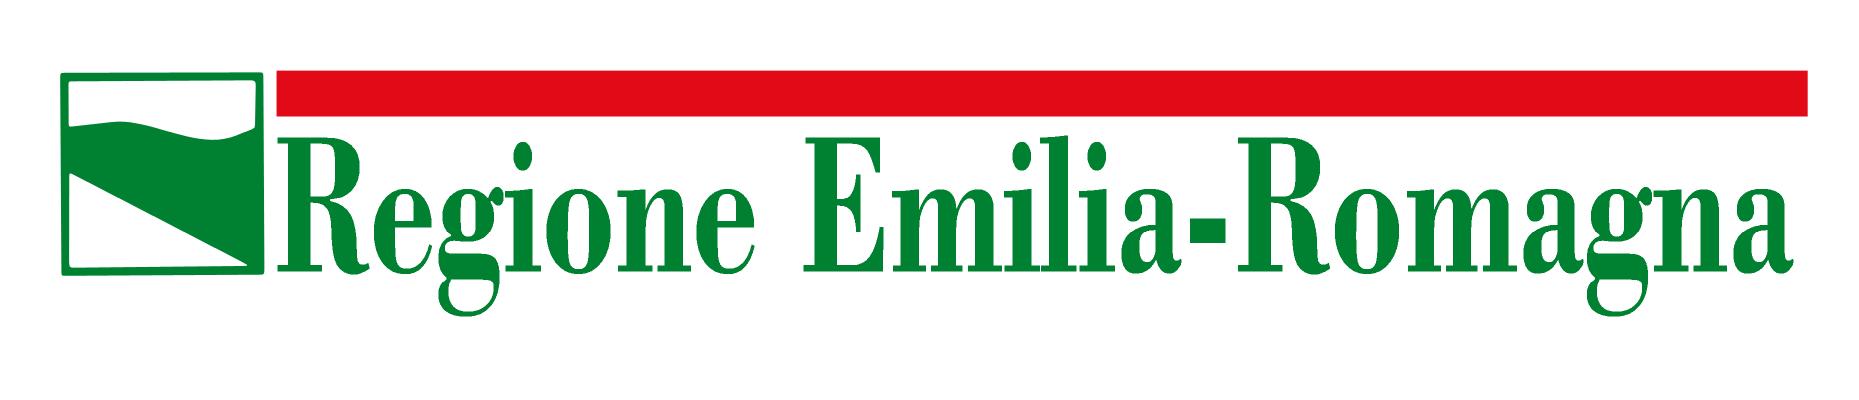 Regione-Emilia-Romagna-logo.jpg - 53,37 kB